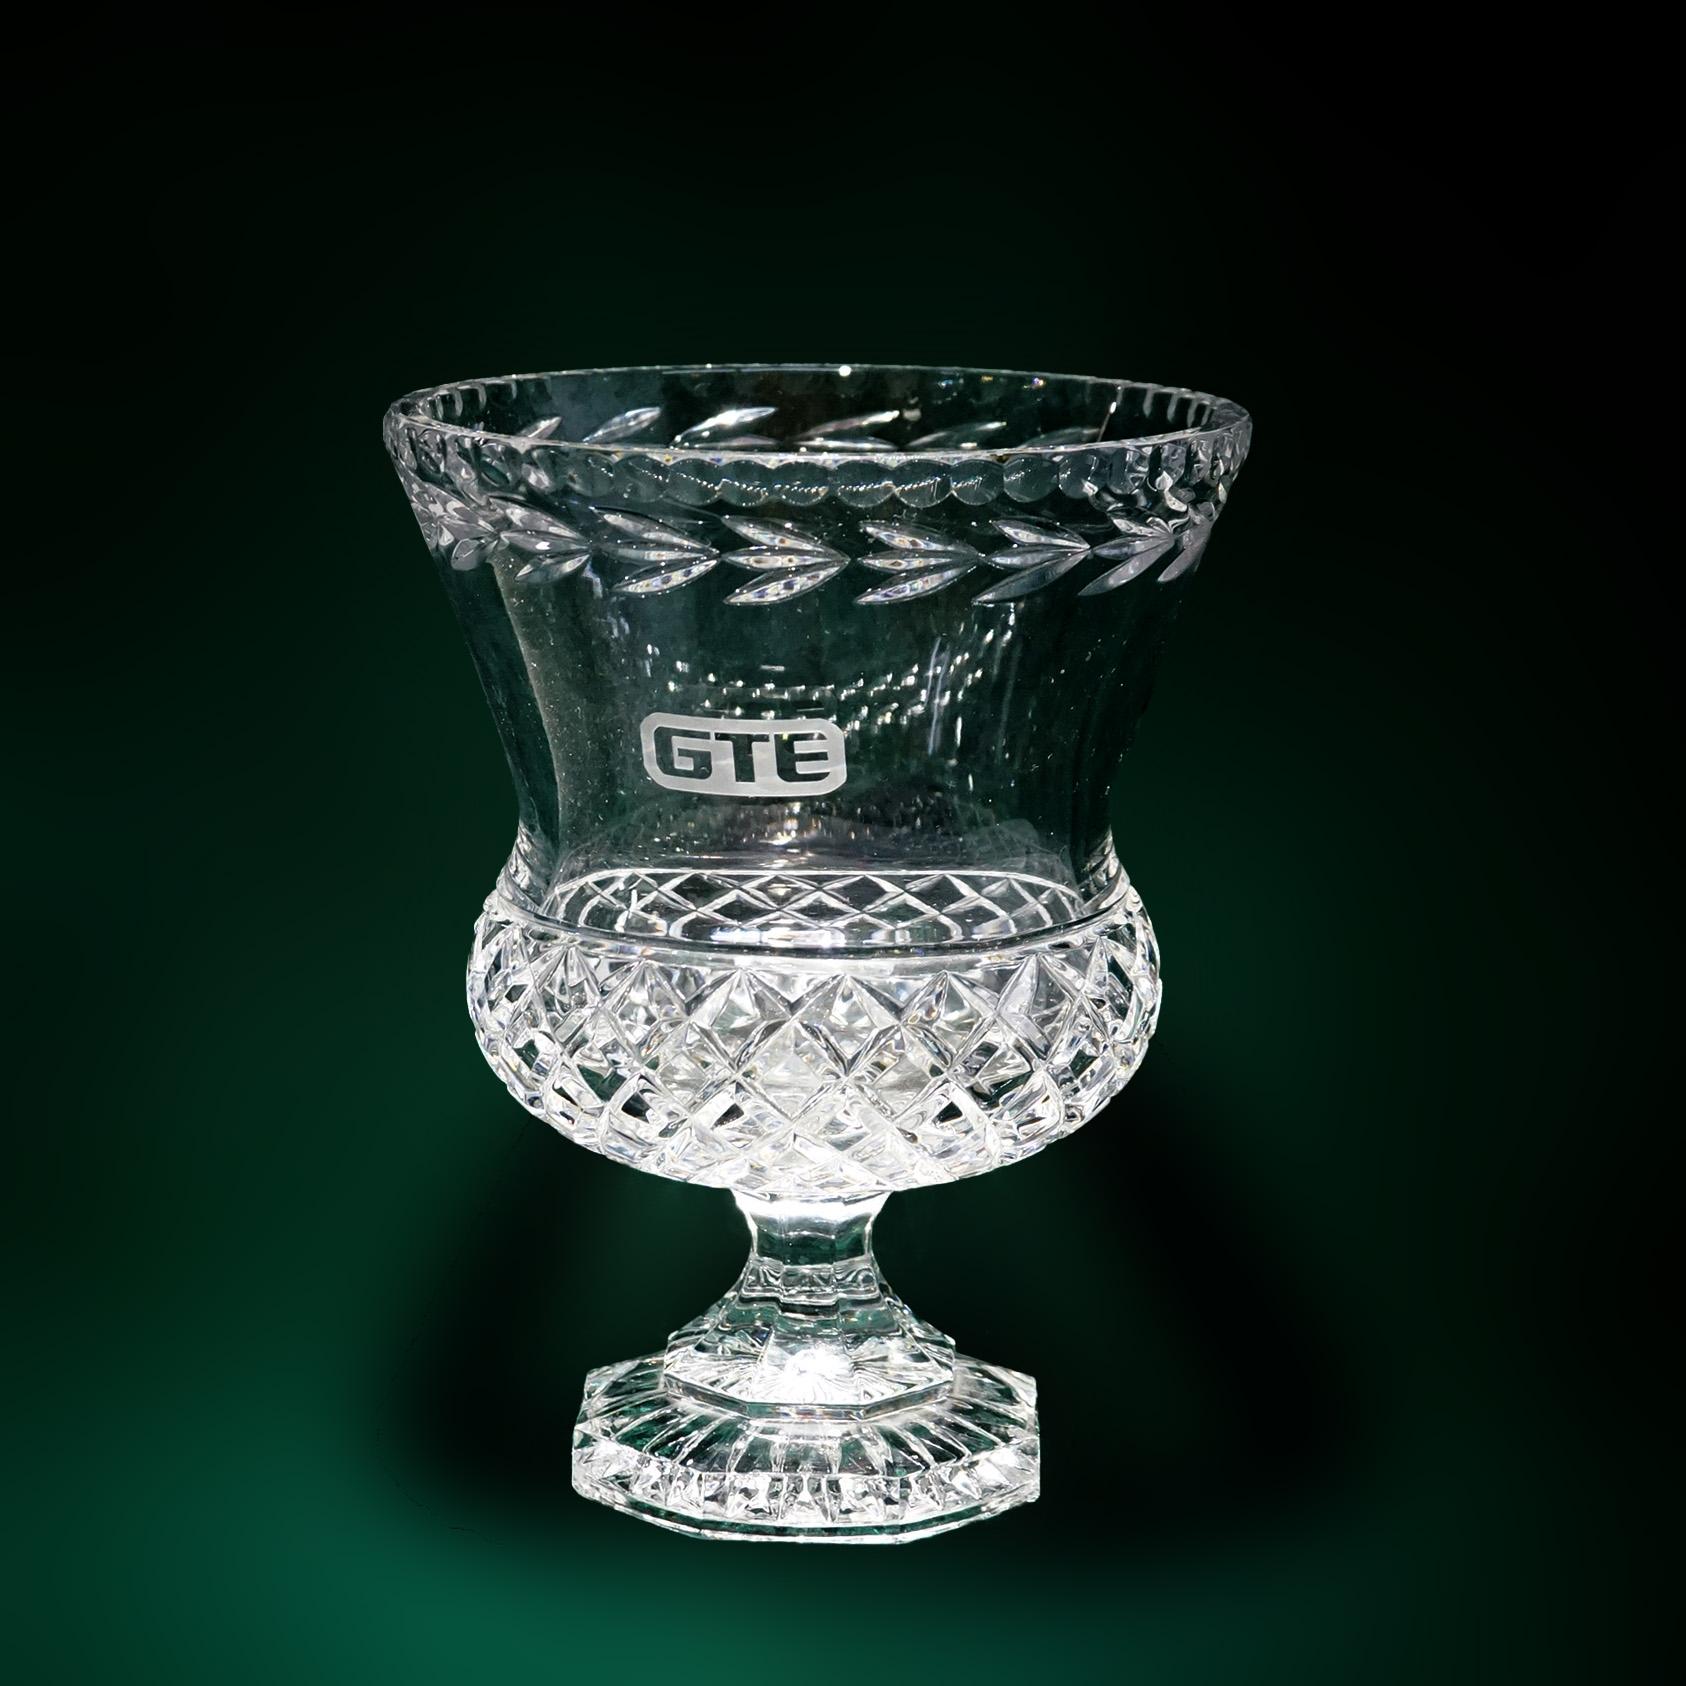 Glass Steuben School Engraved Crystal GTE Trophy Award Cup Vase C1950 For Sale